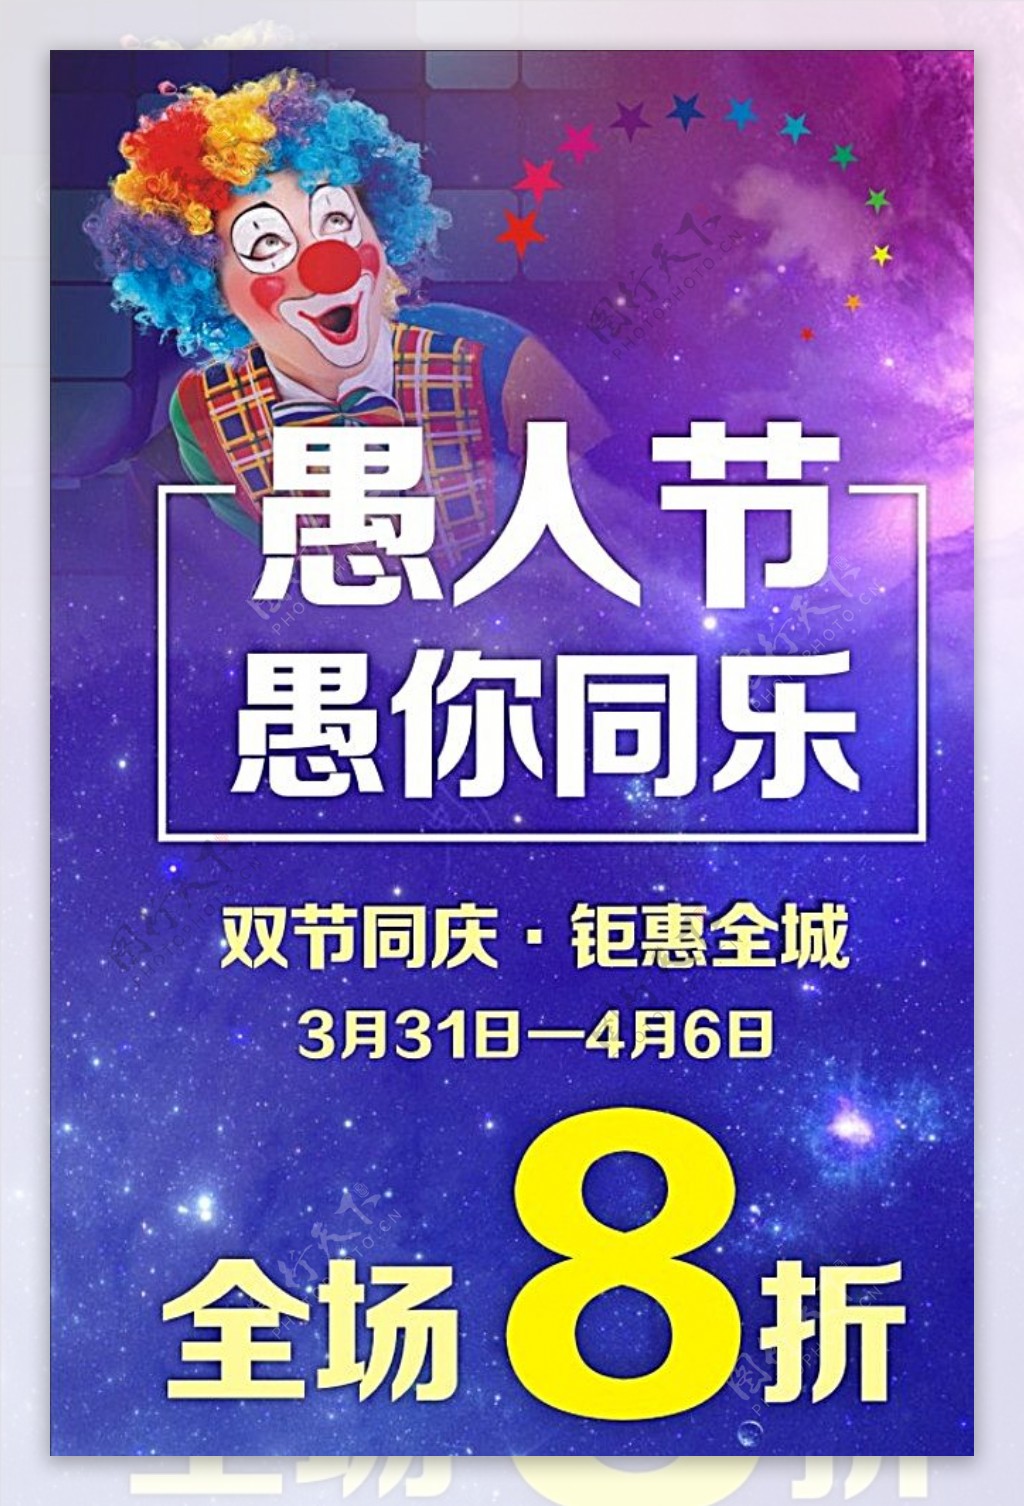 愚人节节日祝福气球小丑手机海报_图片模板素材-稿定设计